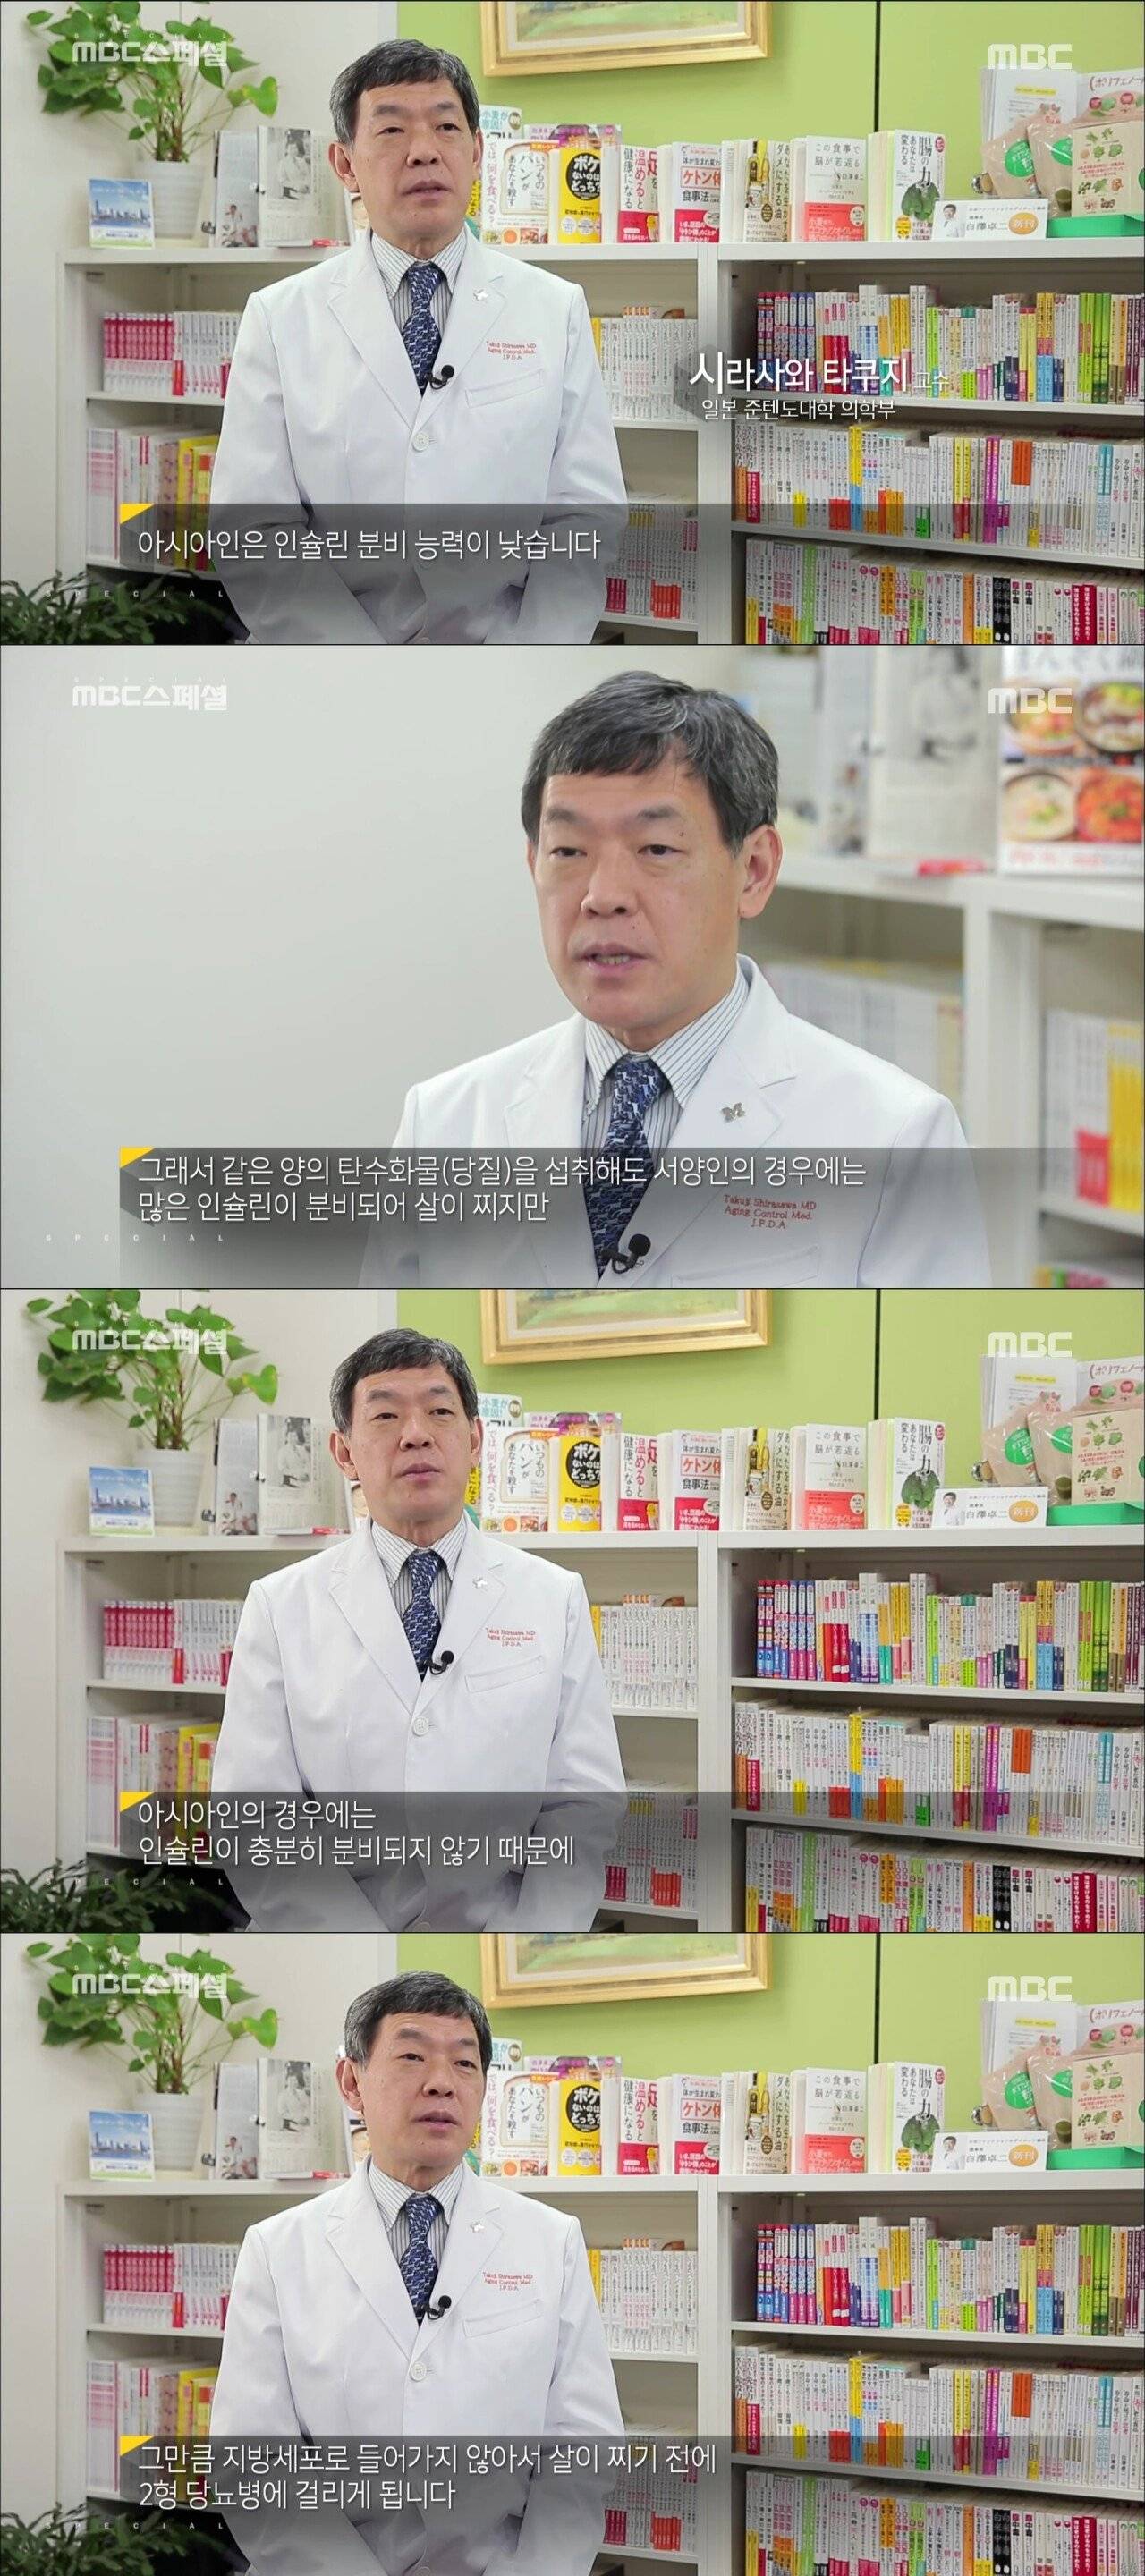 한국에 당뇨 환자가 많은 이유